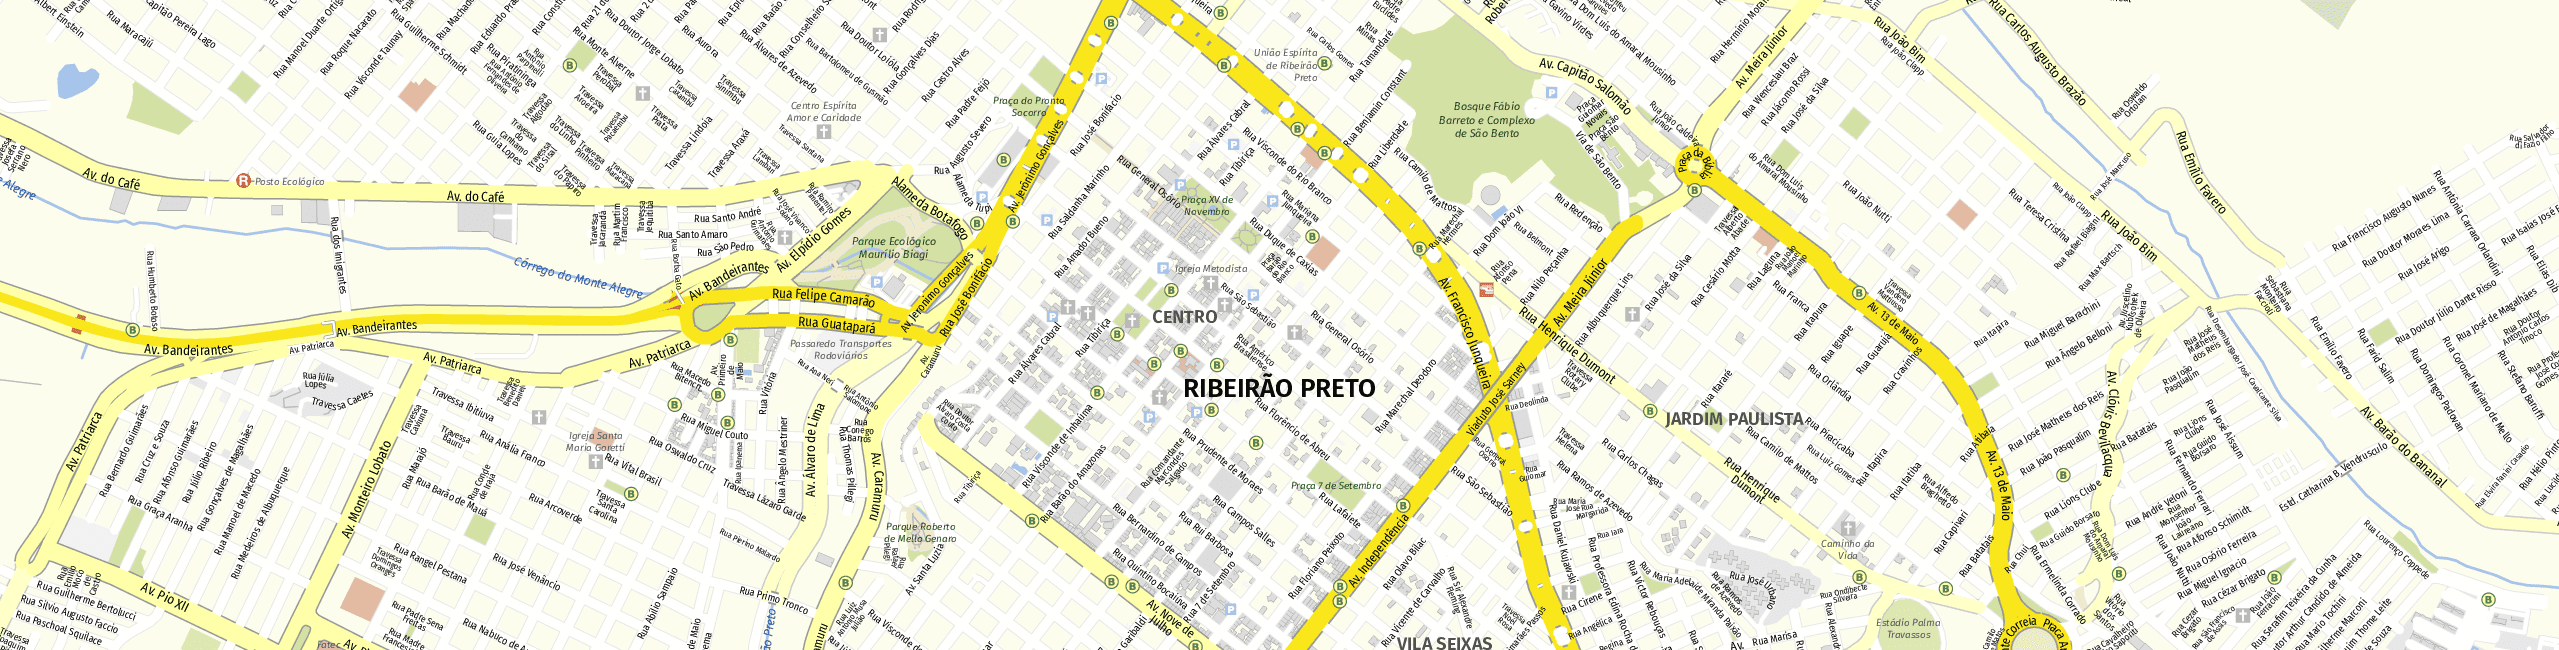 Stadtplan Ribeirão Preto zum Downloaden.